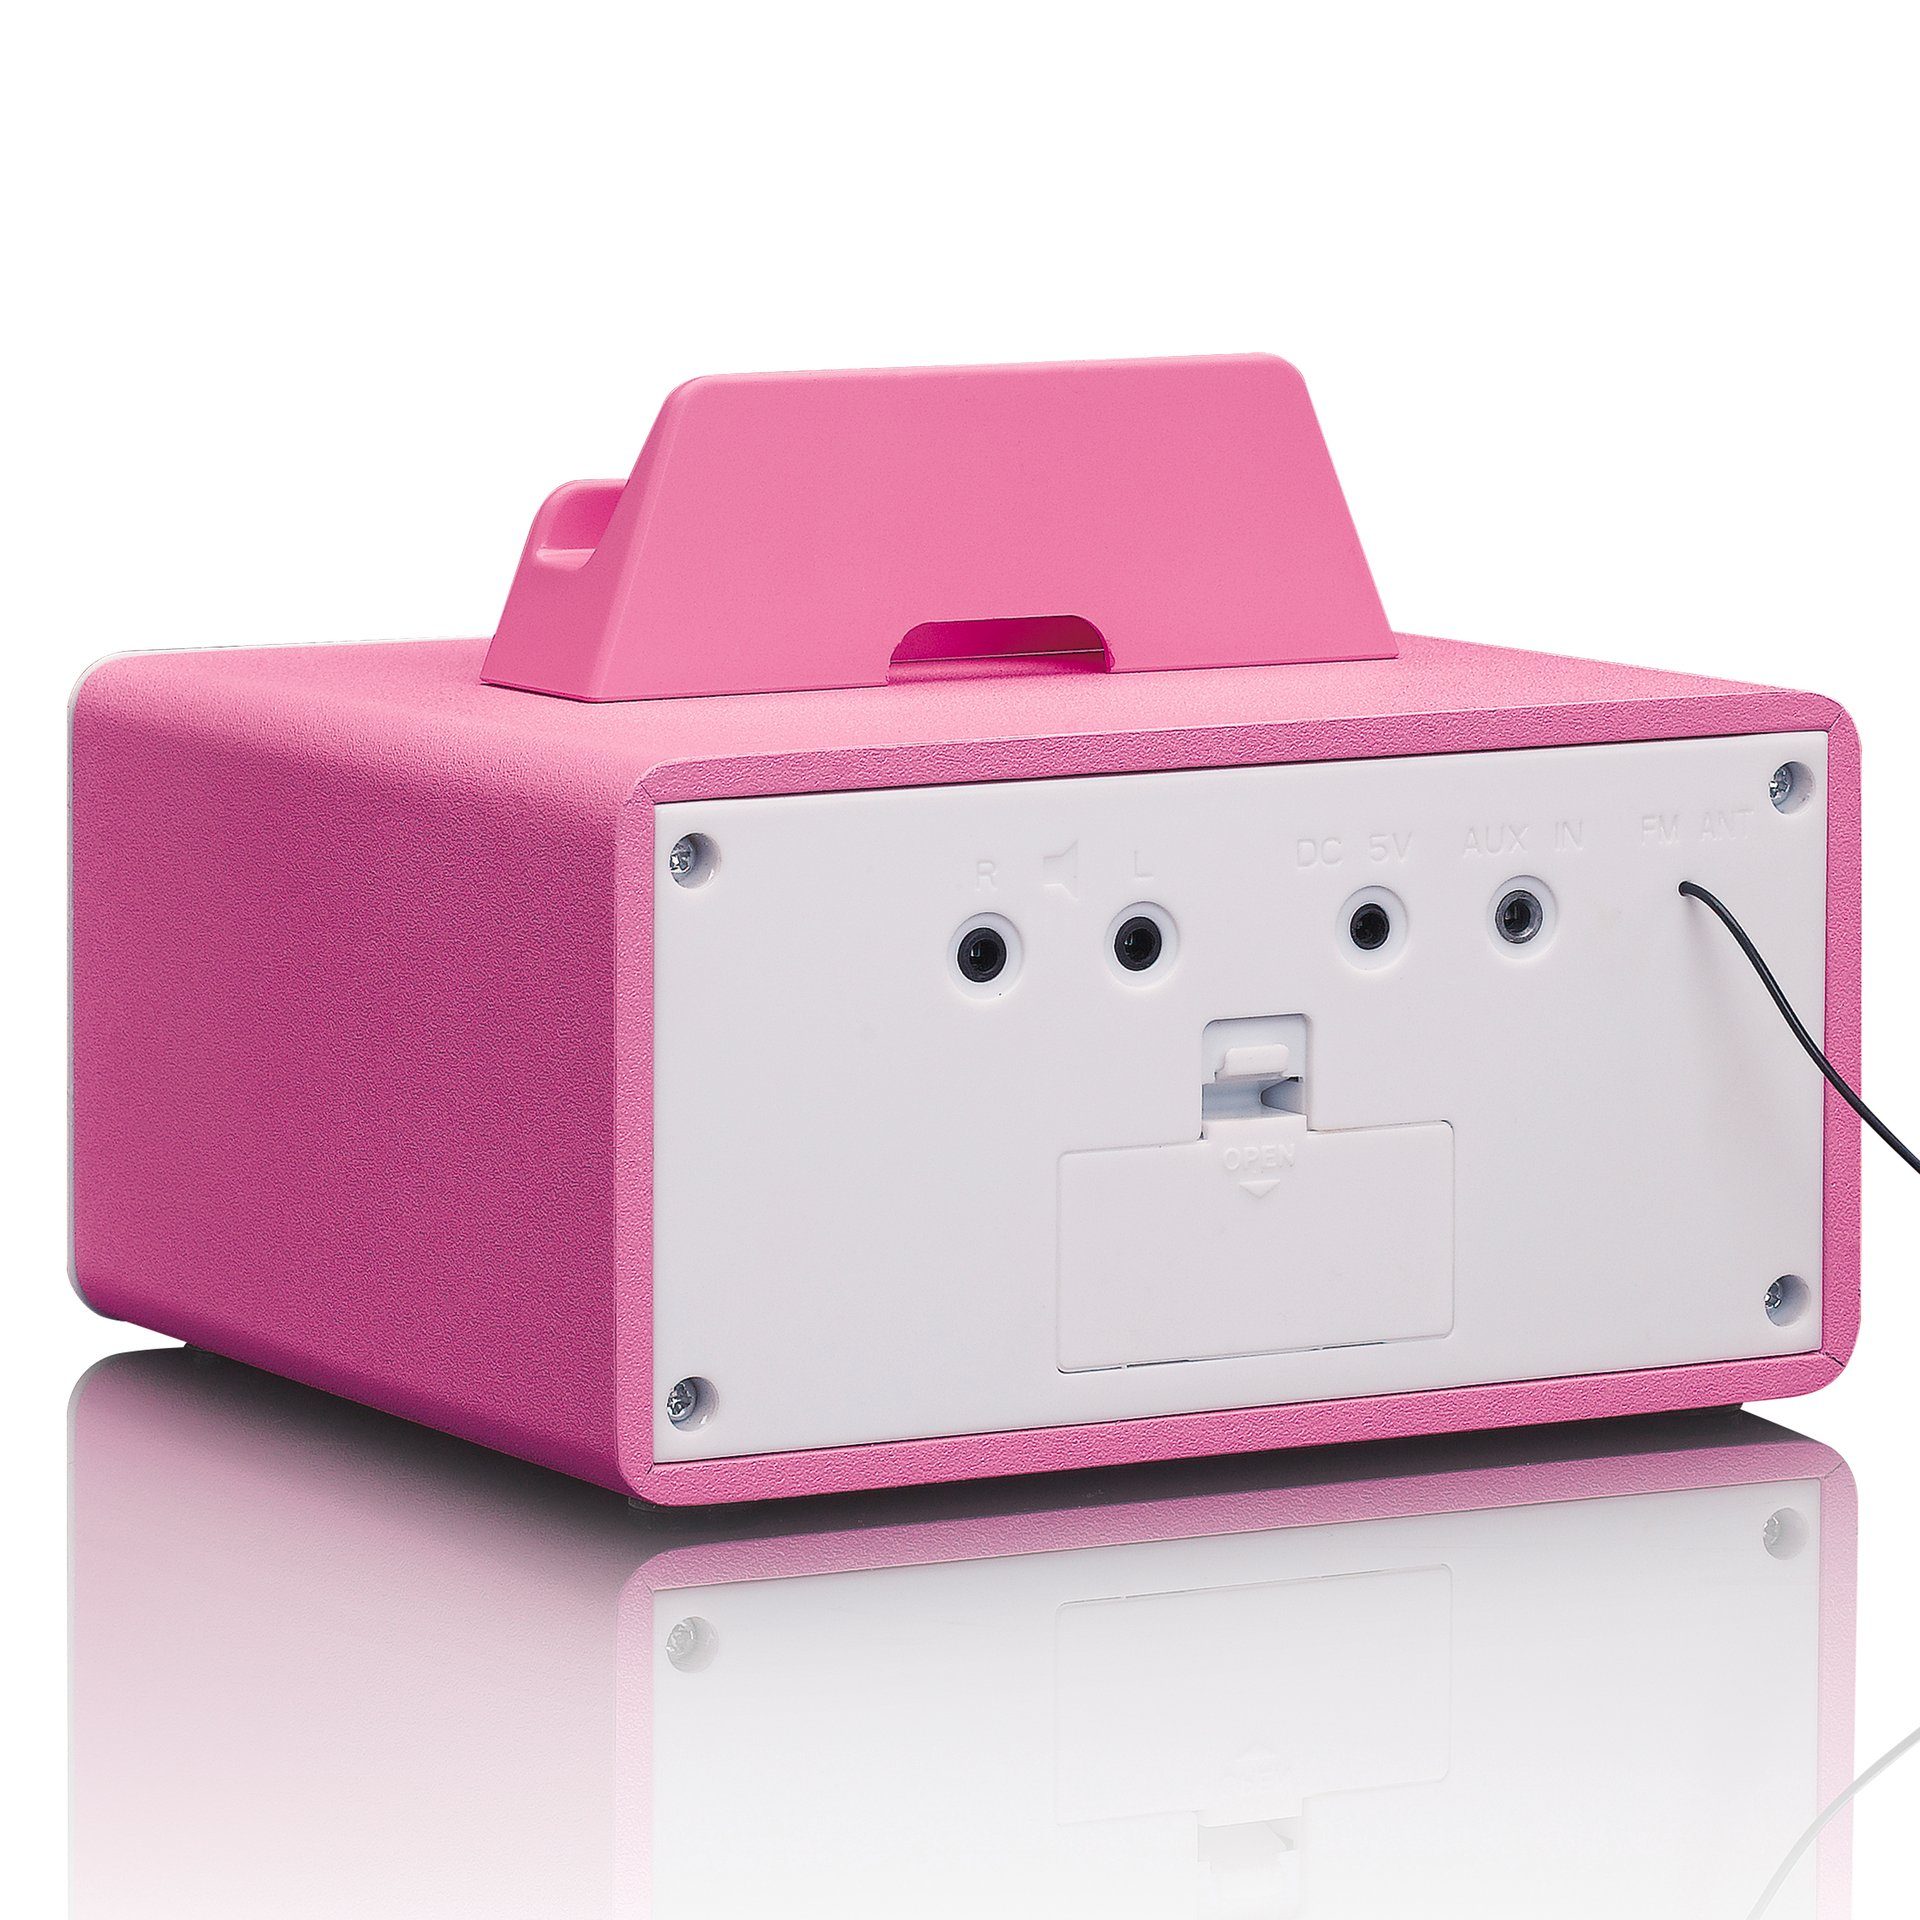 Mikro-Stereoanlage mit 5 MC-020 (FM-Tuner, Pink;Weiß und W) FM-Radio Microanlage Bluetooth Lenco